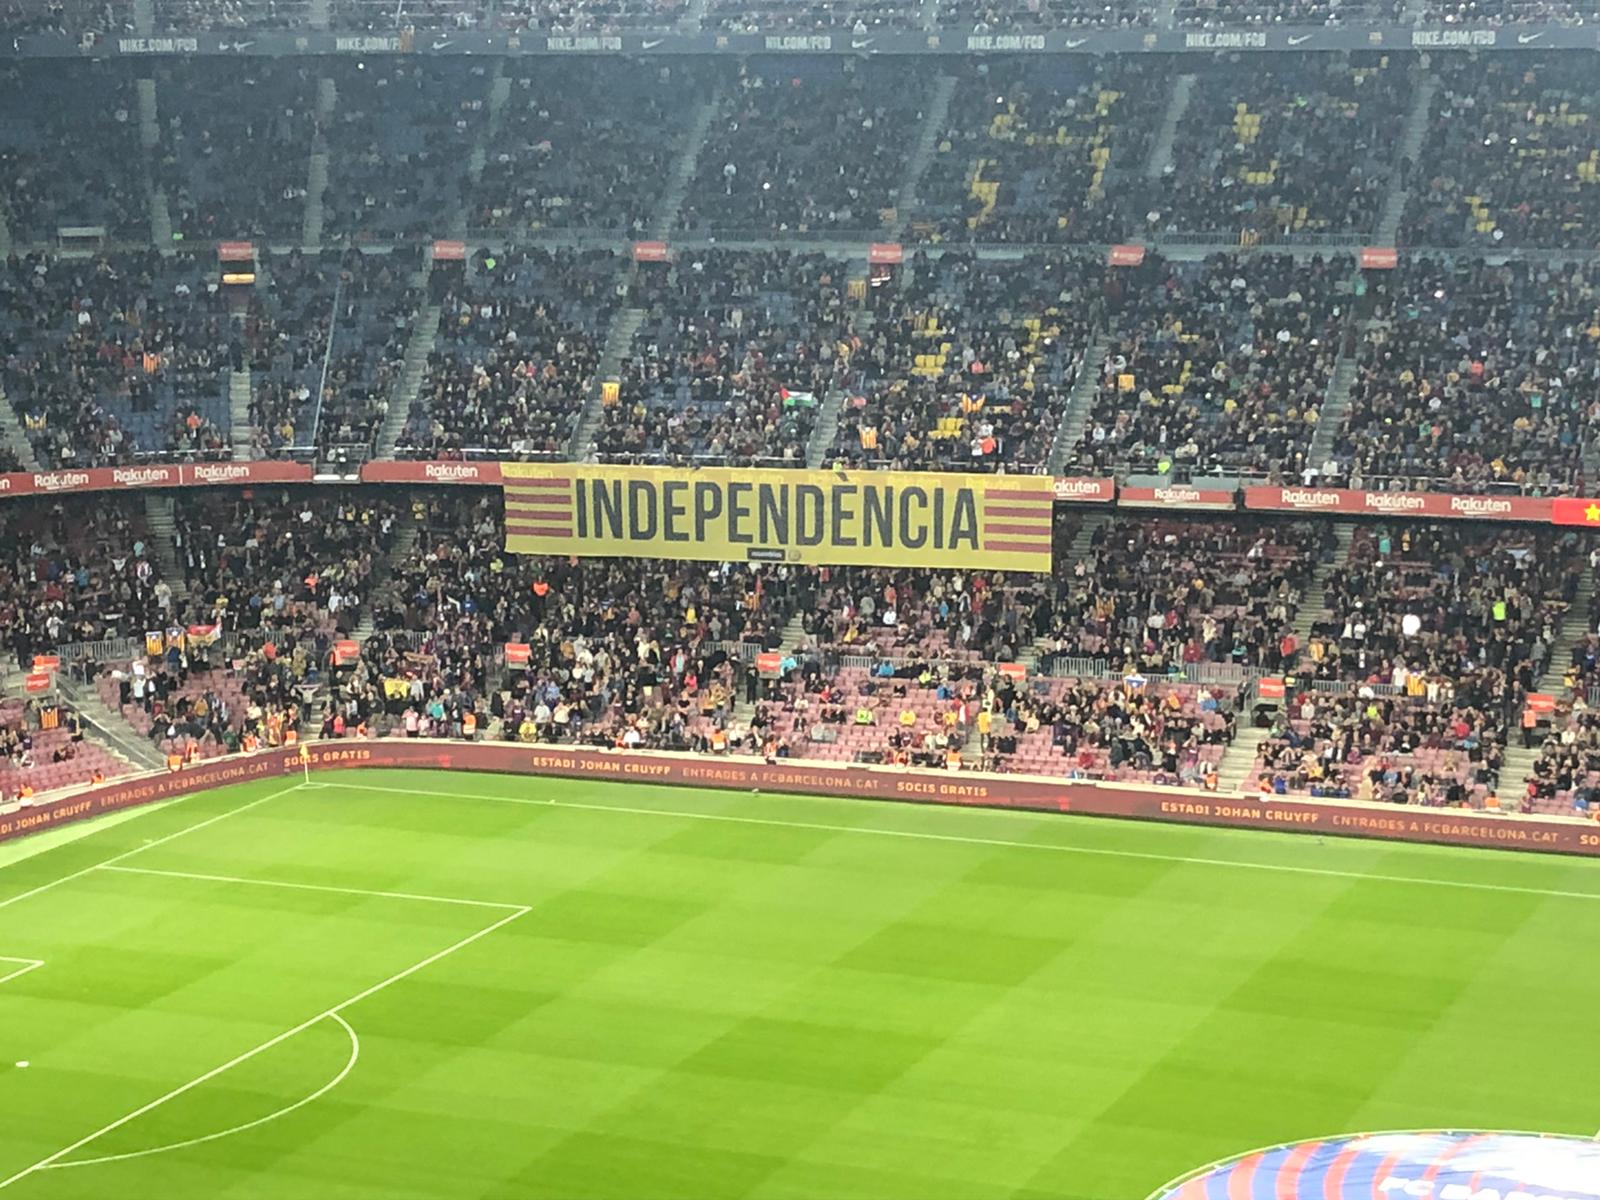 El Camp Nou no perdona la sentencia: "Independencia y libertad"